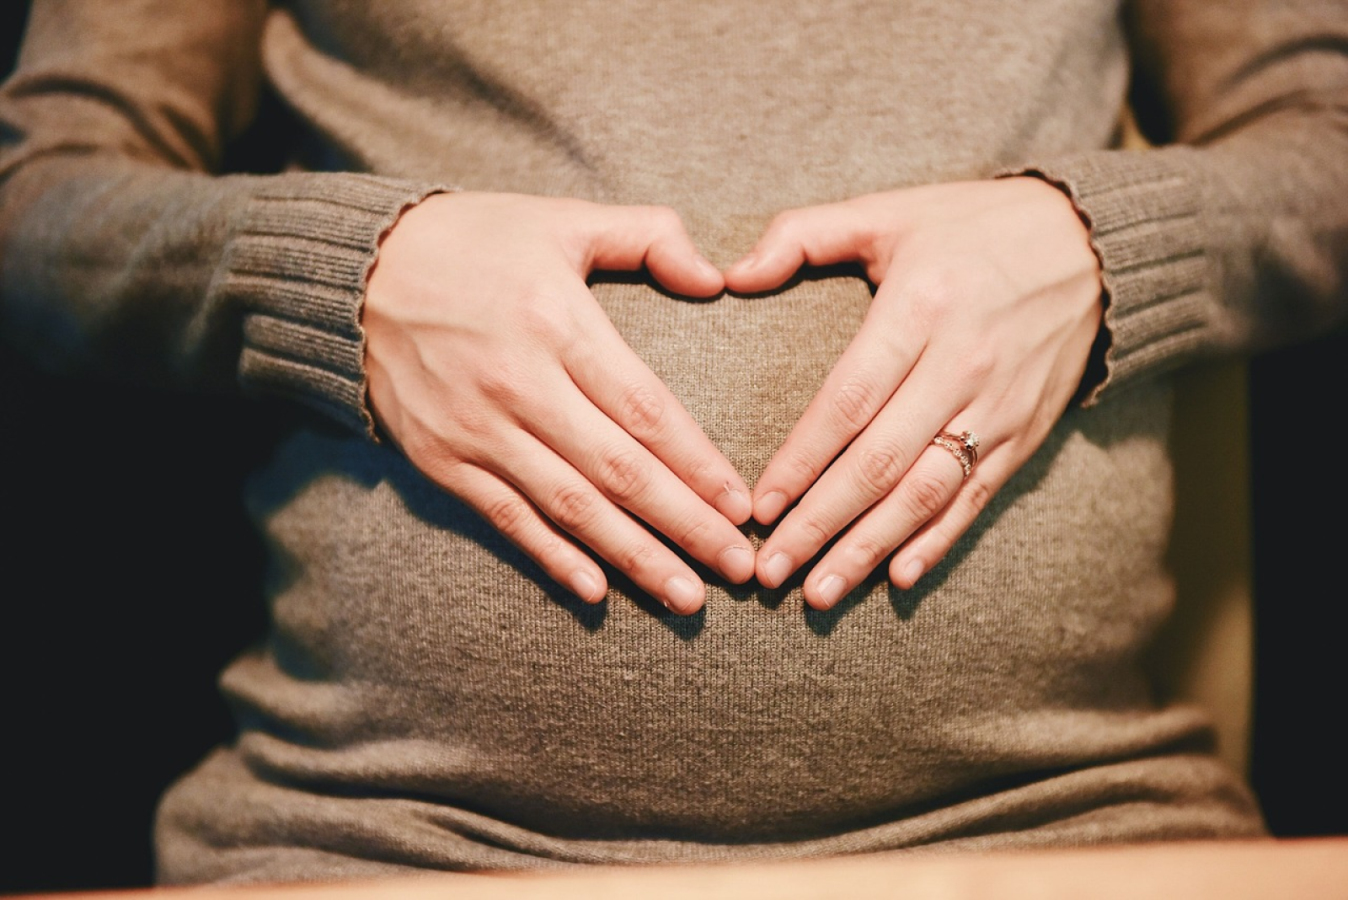 Bezpłatne zajęcia dla kobiet w ciąży i po porodzie